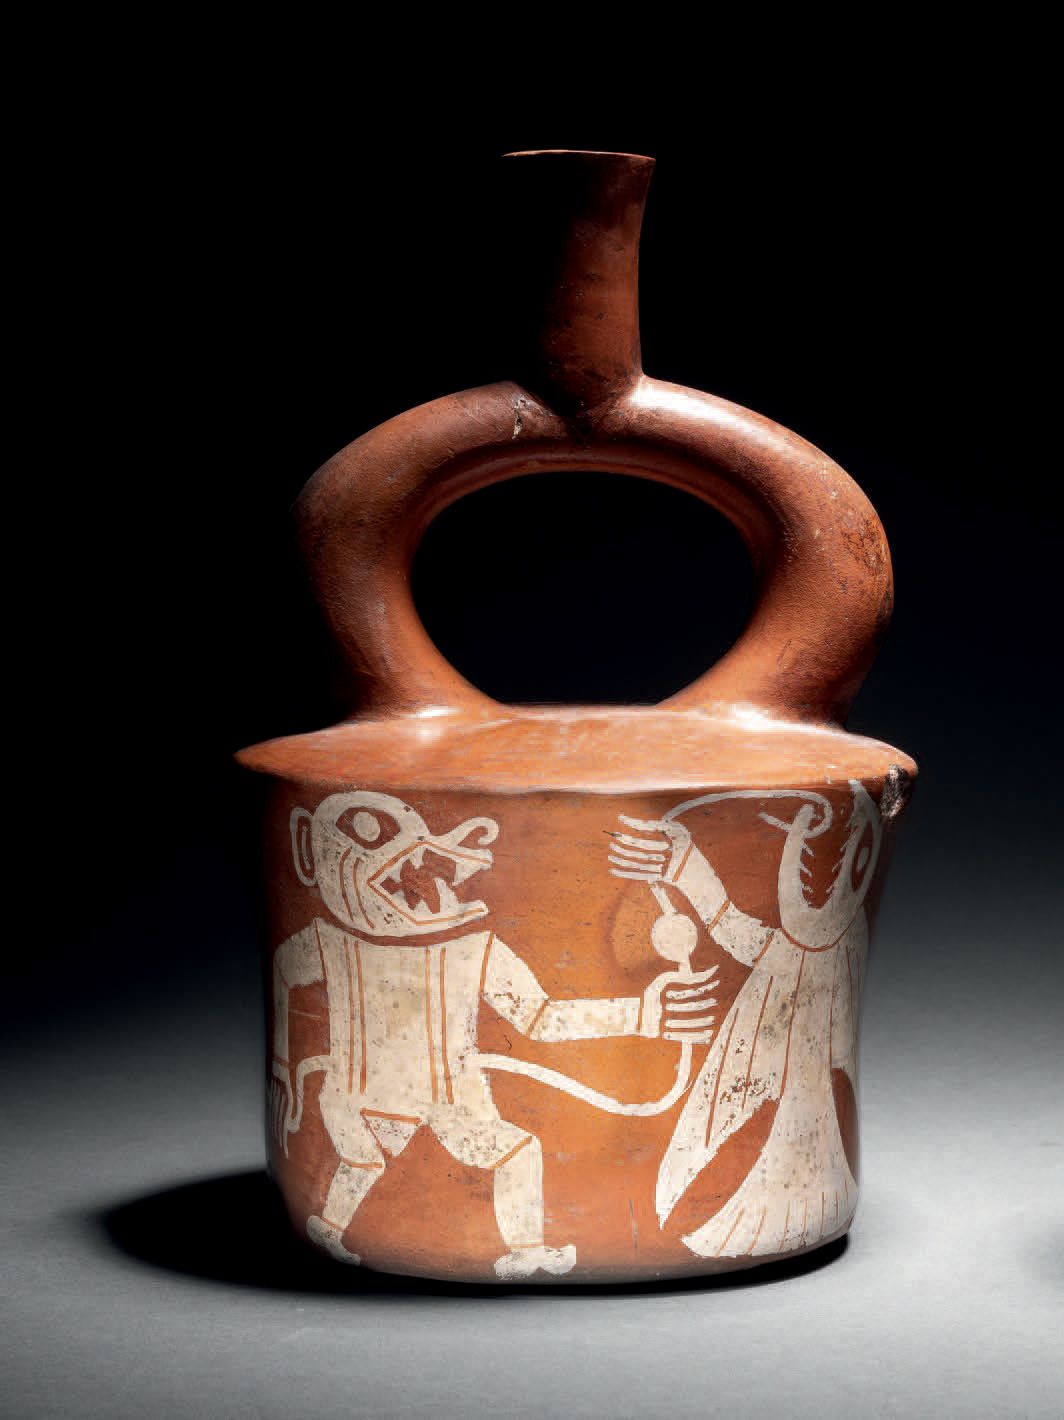 Null 
中古时期，公元100-700年
陶器，有橙褐色滑石和白色油漆
高20厘米
出处：
- 美国私人收藏，1991年获得
- Economos Works&hellip;